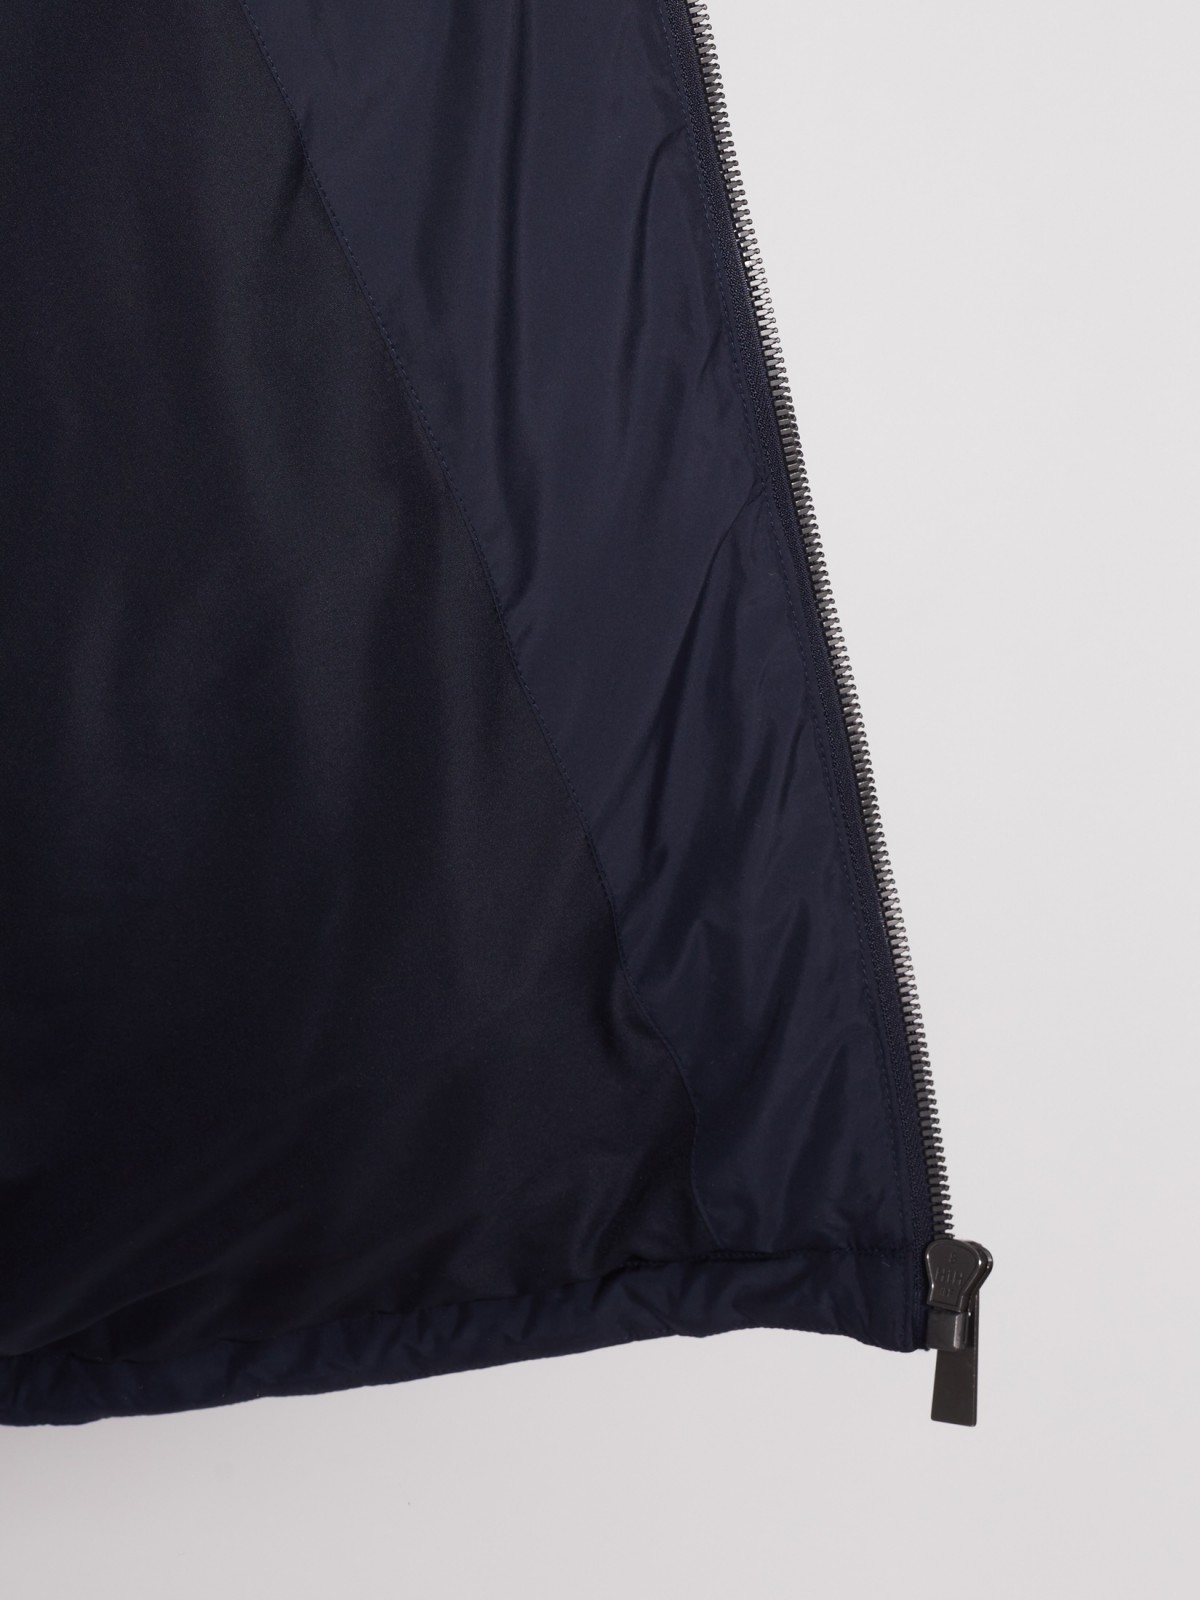 Куртка-косуха с воротником-стойкой zolla 012135139134, цвет синий, размер M - фото 3